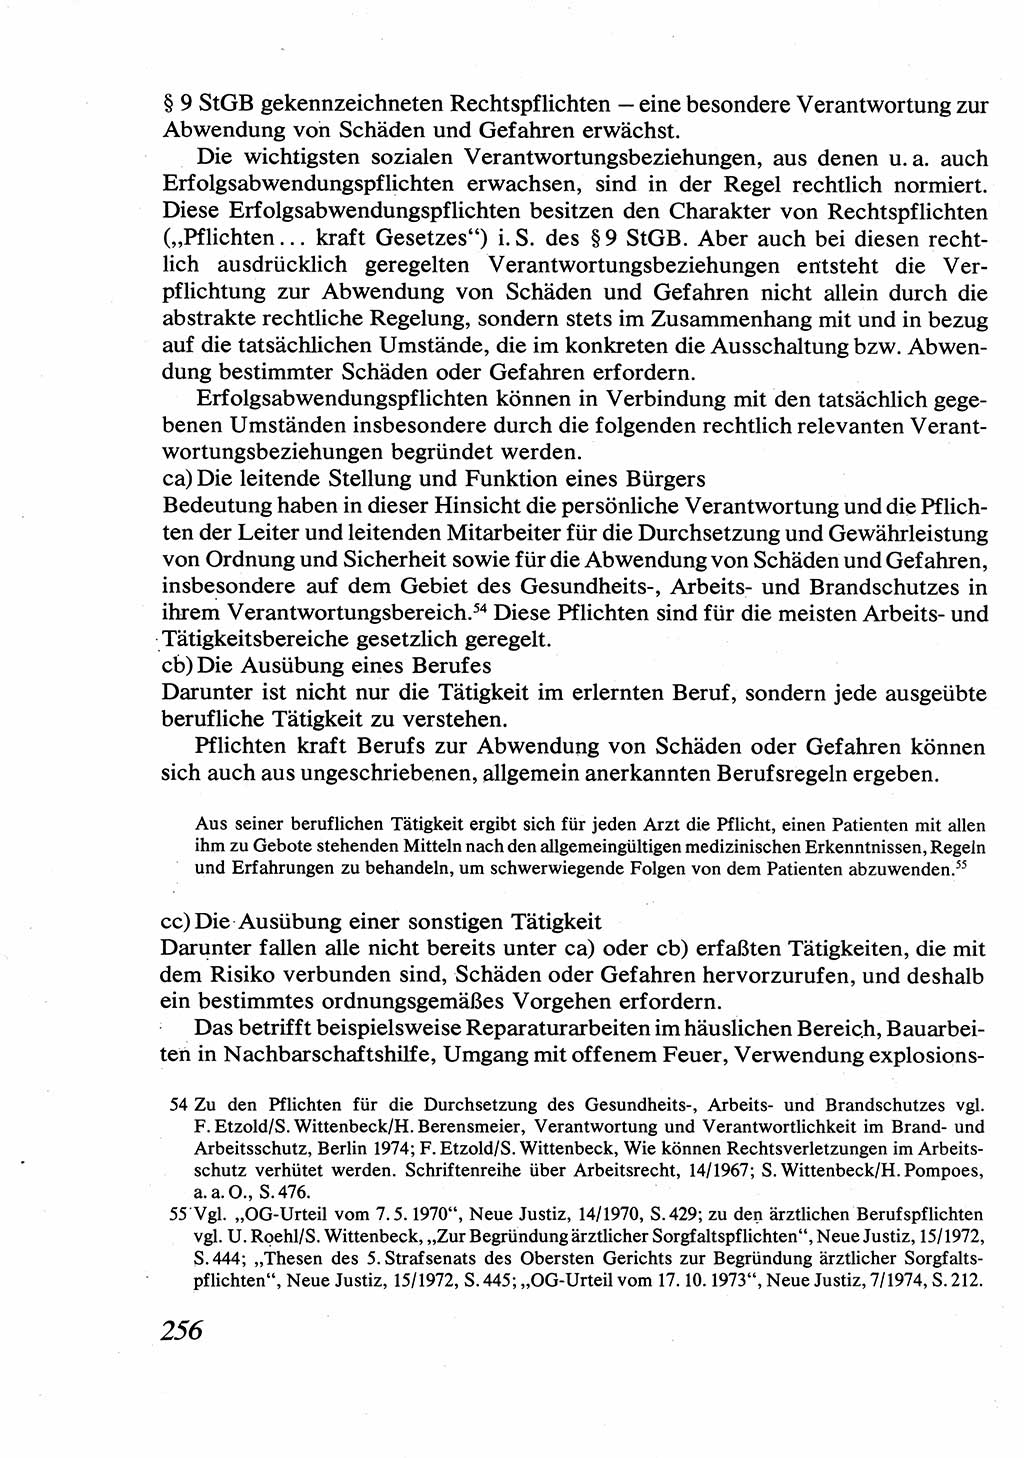 Strafrecht [Deutsche Demokratische Republik (DDR)], Allgemeiner Teil, Lehrbuch 1976, Seite 256 (Strafr. DDR AT Lb. 1976, S. 256)